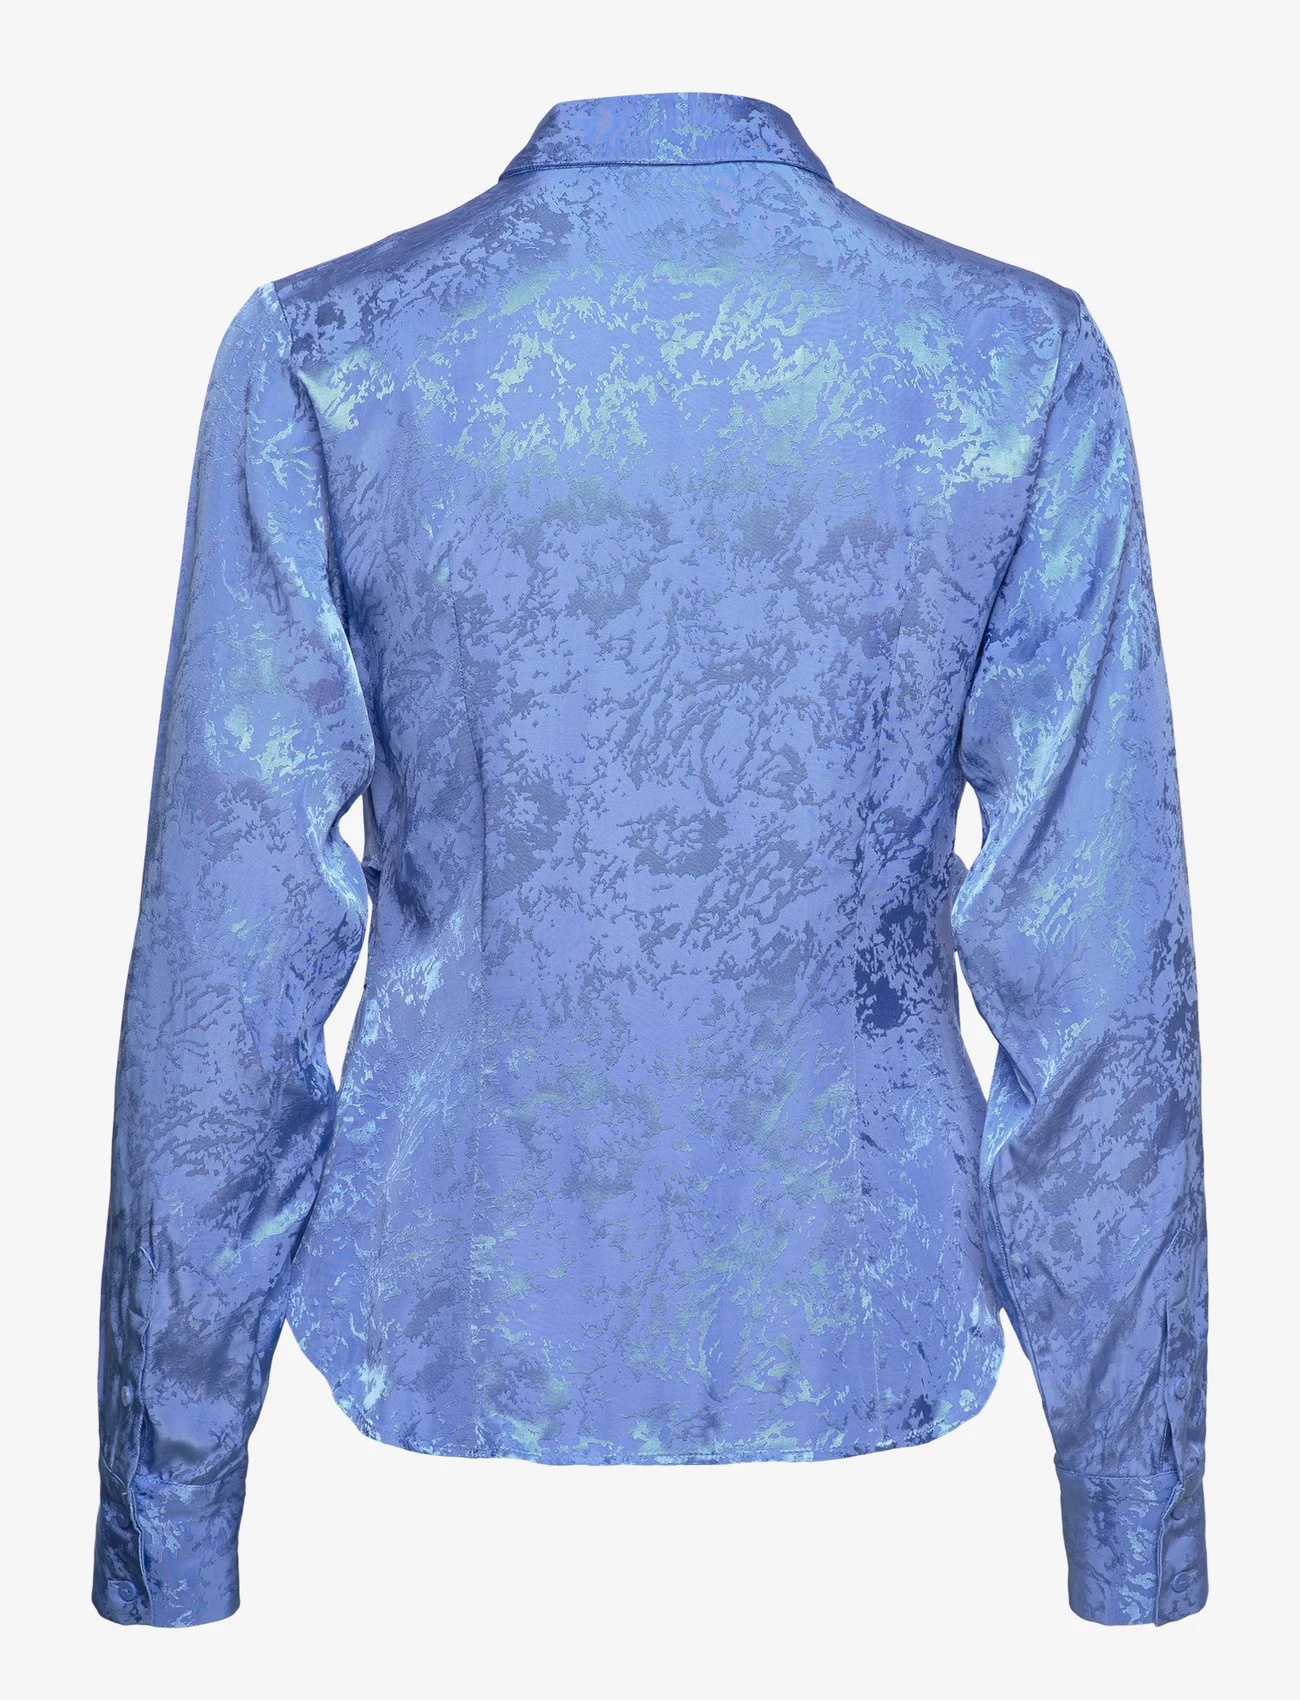 Selected Femme - SLFBLUE LS SHIRT B - long-sleeved shirts - ultramarine - 1